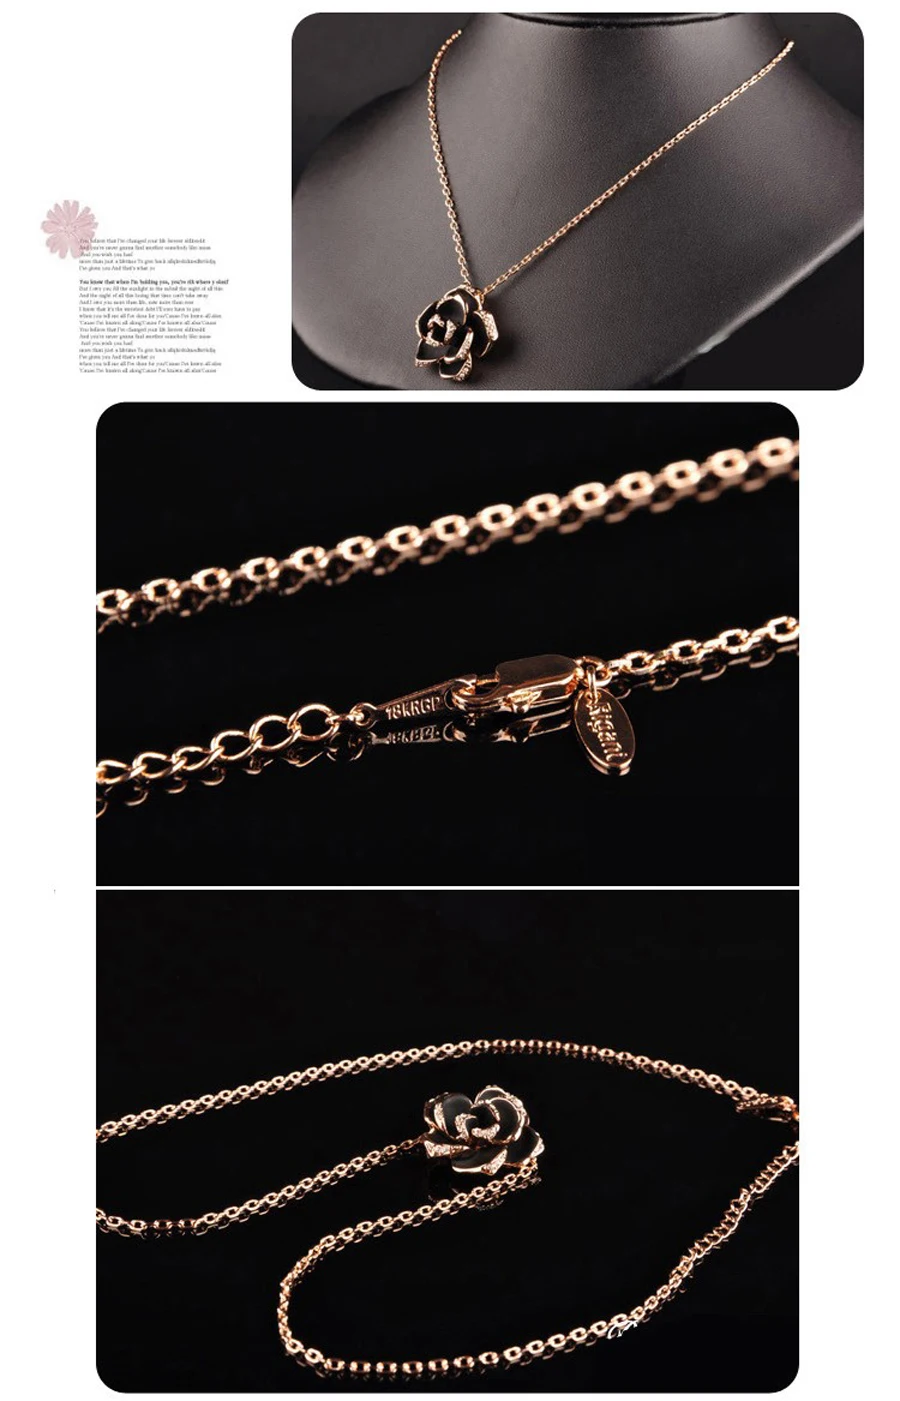 Марка Камелия дизайн кулон Мода женские золотые-черного цвета картина роза цветок ожерелье серьги кольцо ювелирных изделий